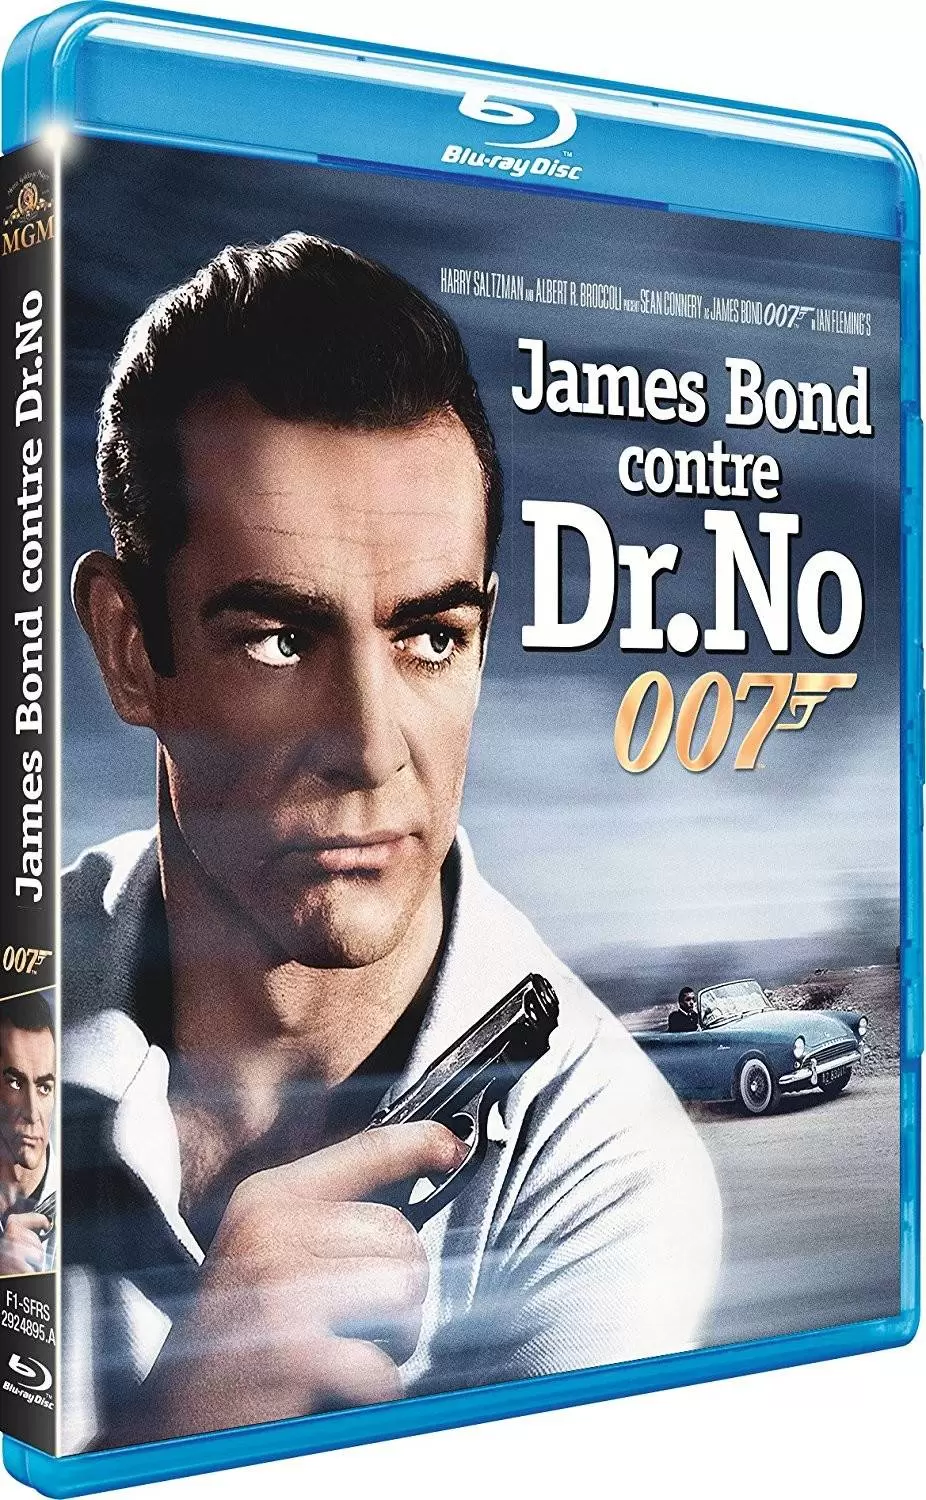 James Bond - James Bond contre Dr No